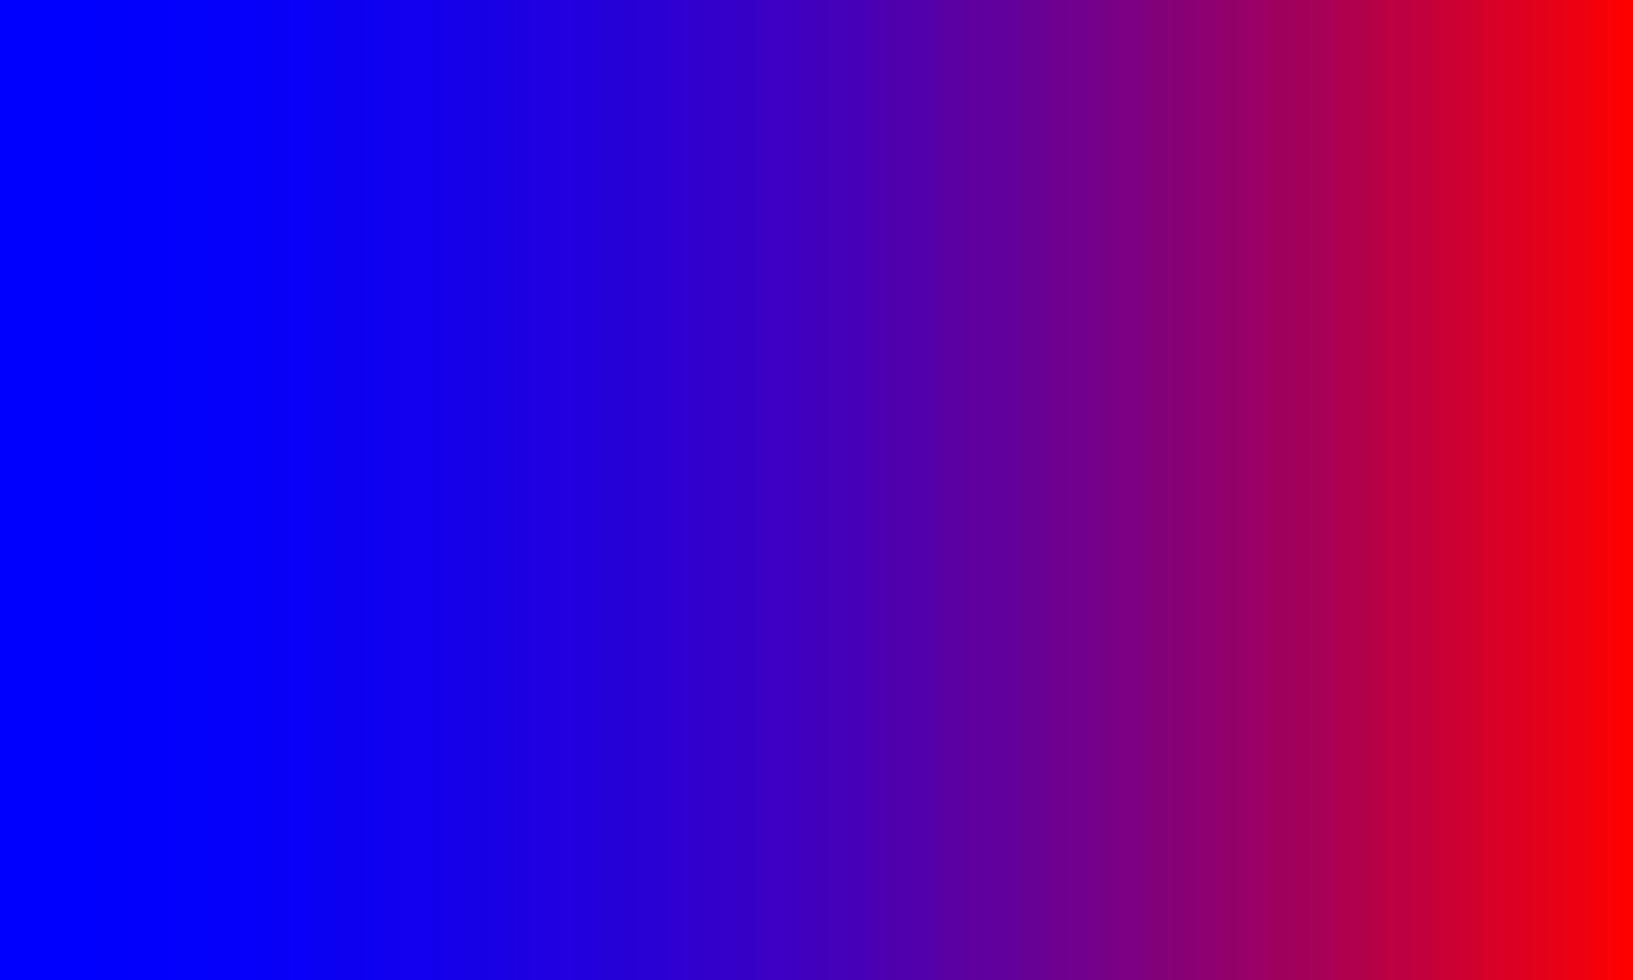 gradient bakgrund. blått och rött. abstrakt, enkel, glad och ren stil. lämplig för kopieringsutrymme, tapeter, bakgrund, banner, flygblad eller inredning vektor